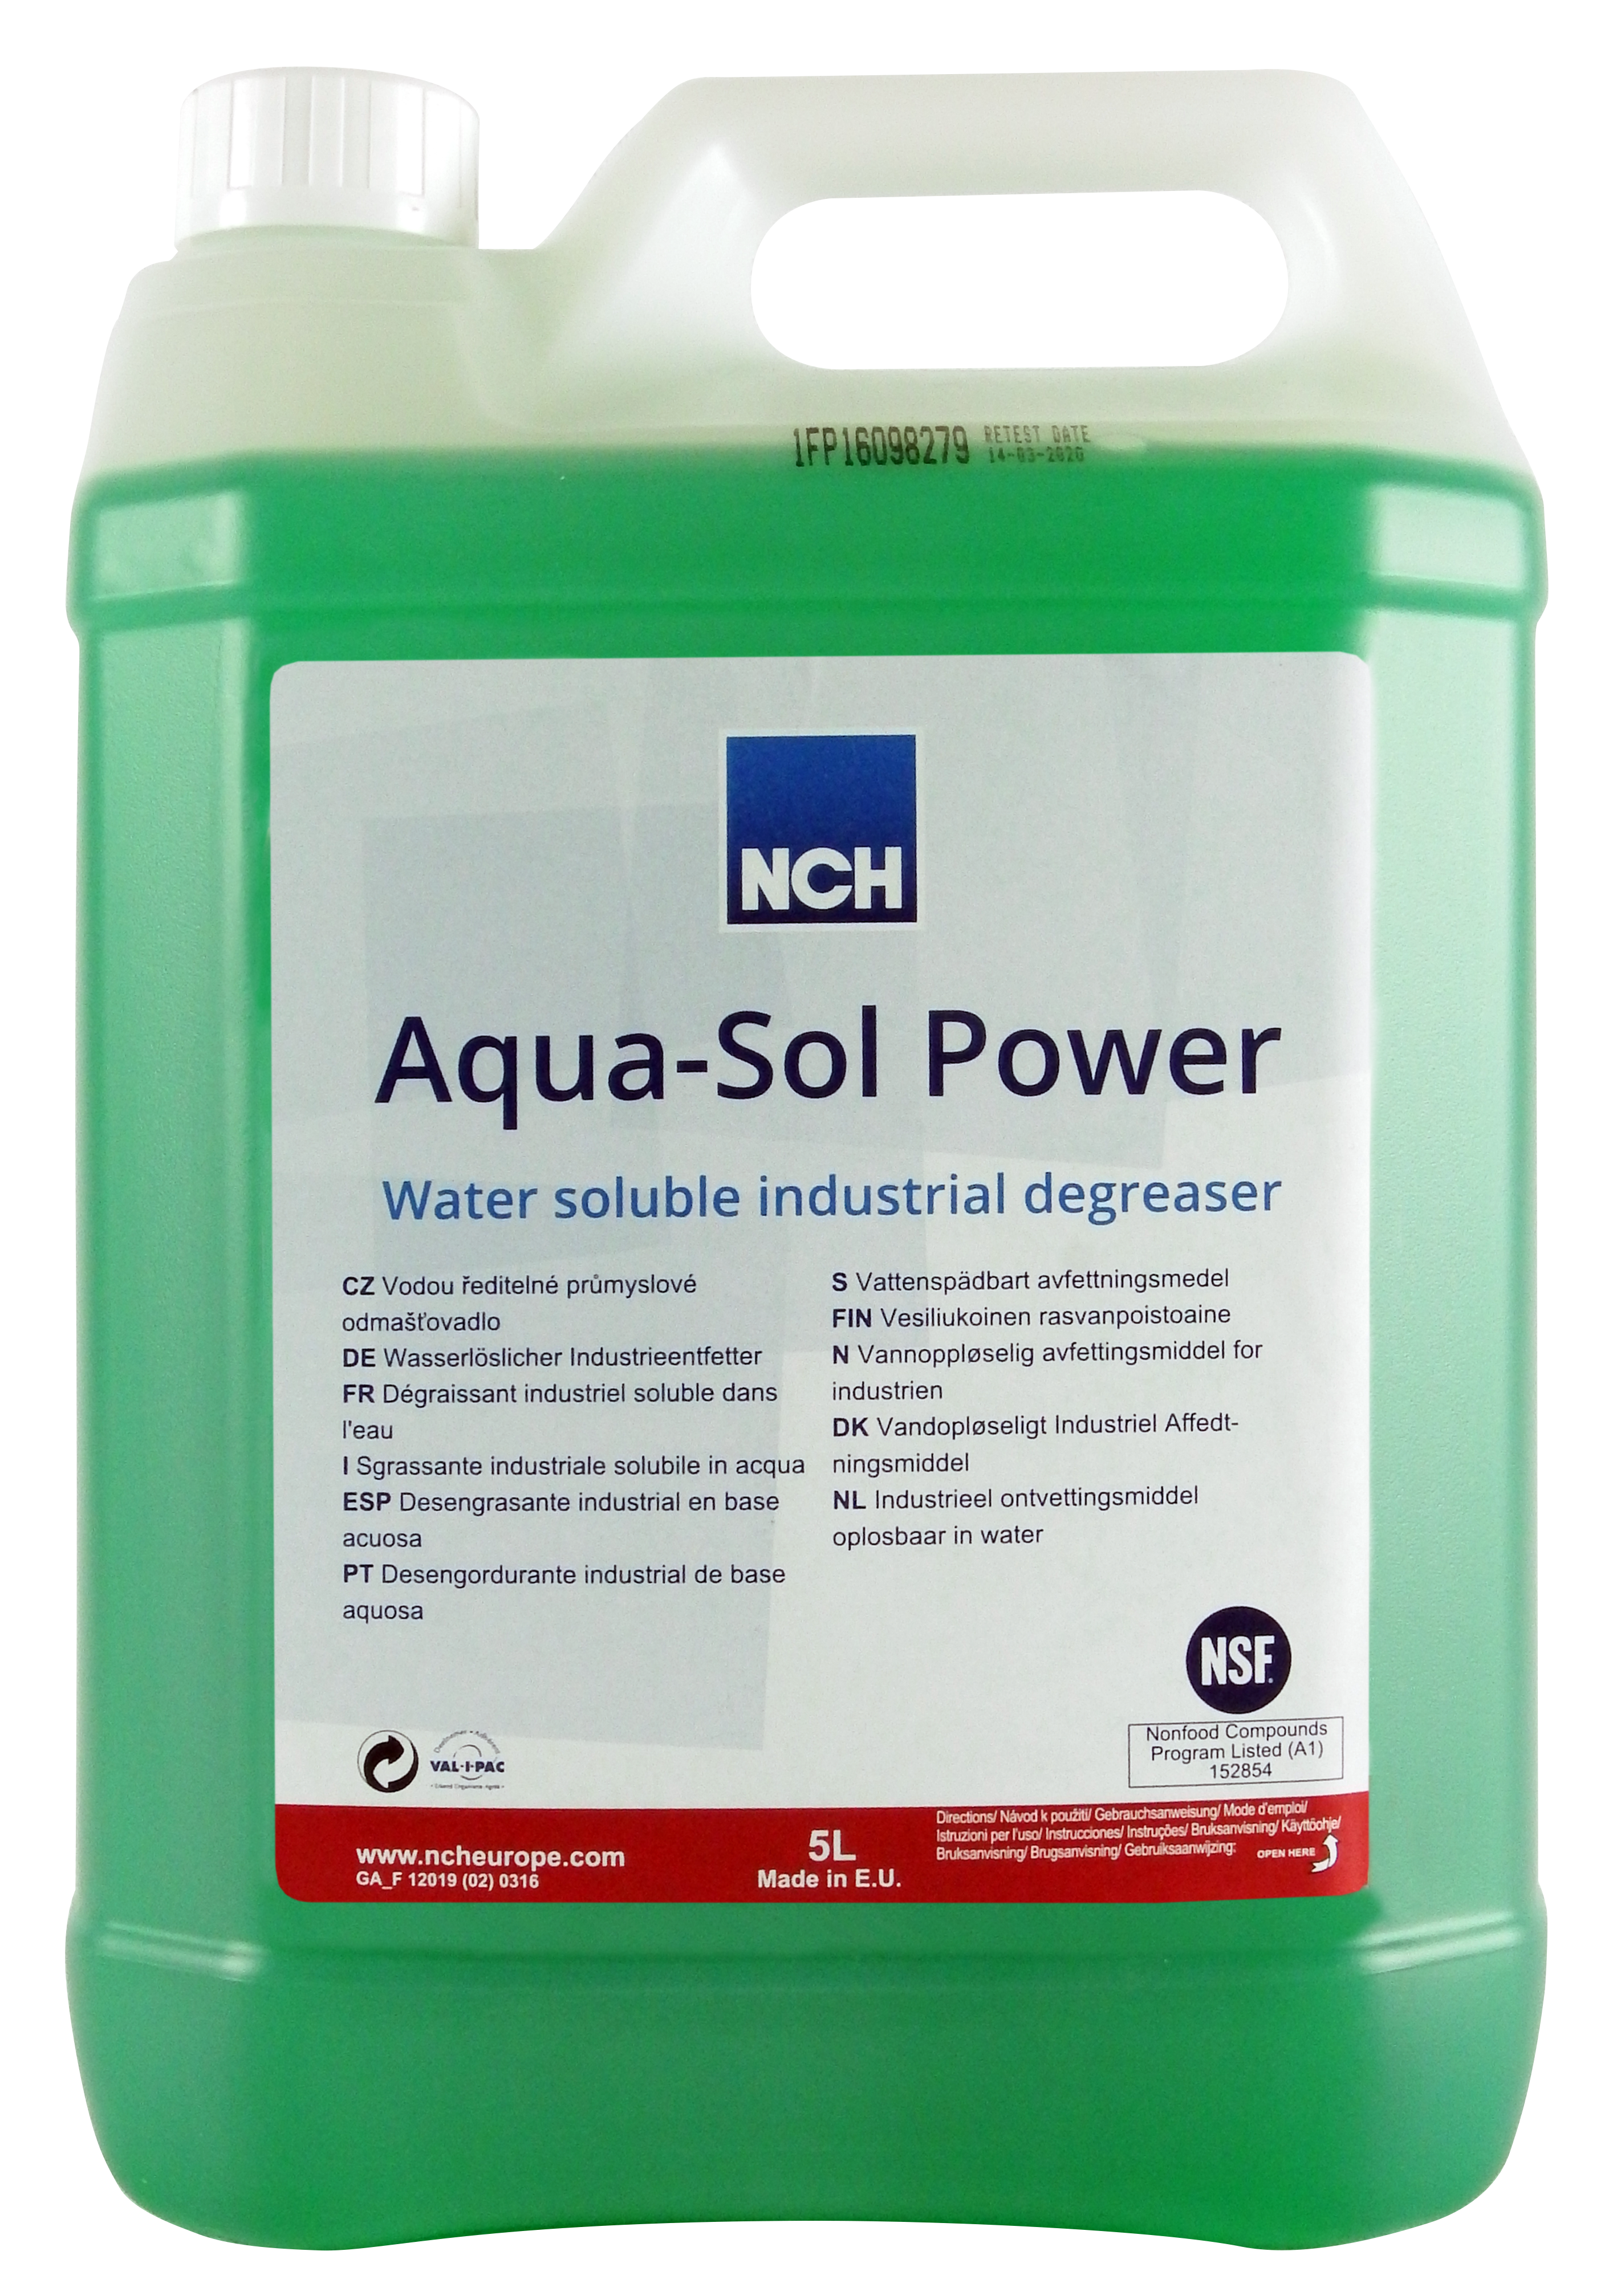 Aqua-Sol Power